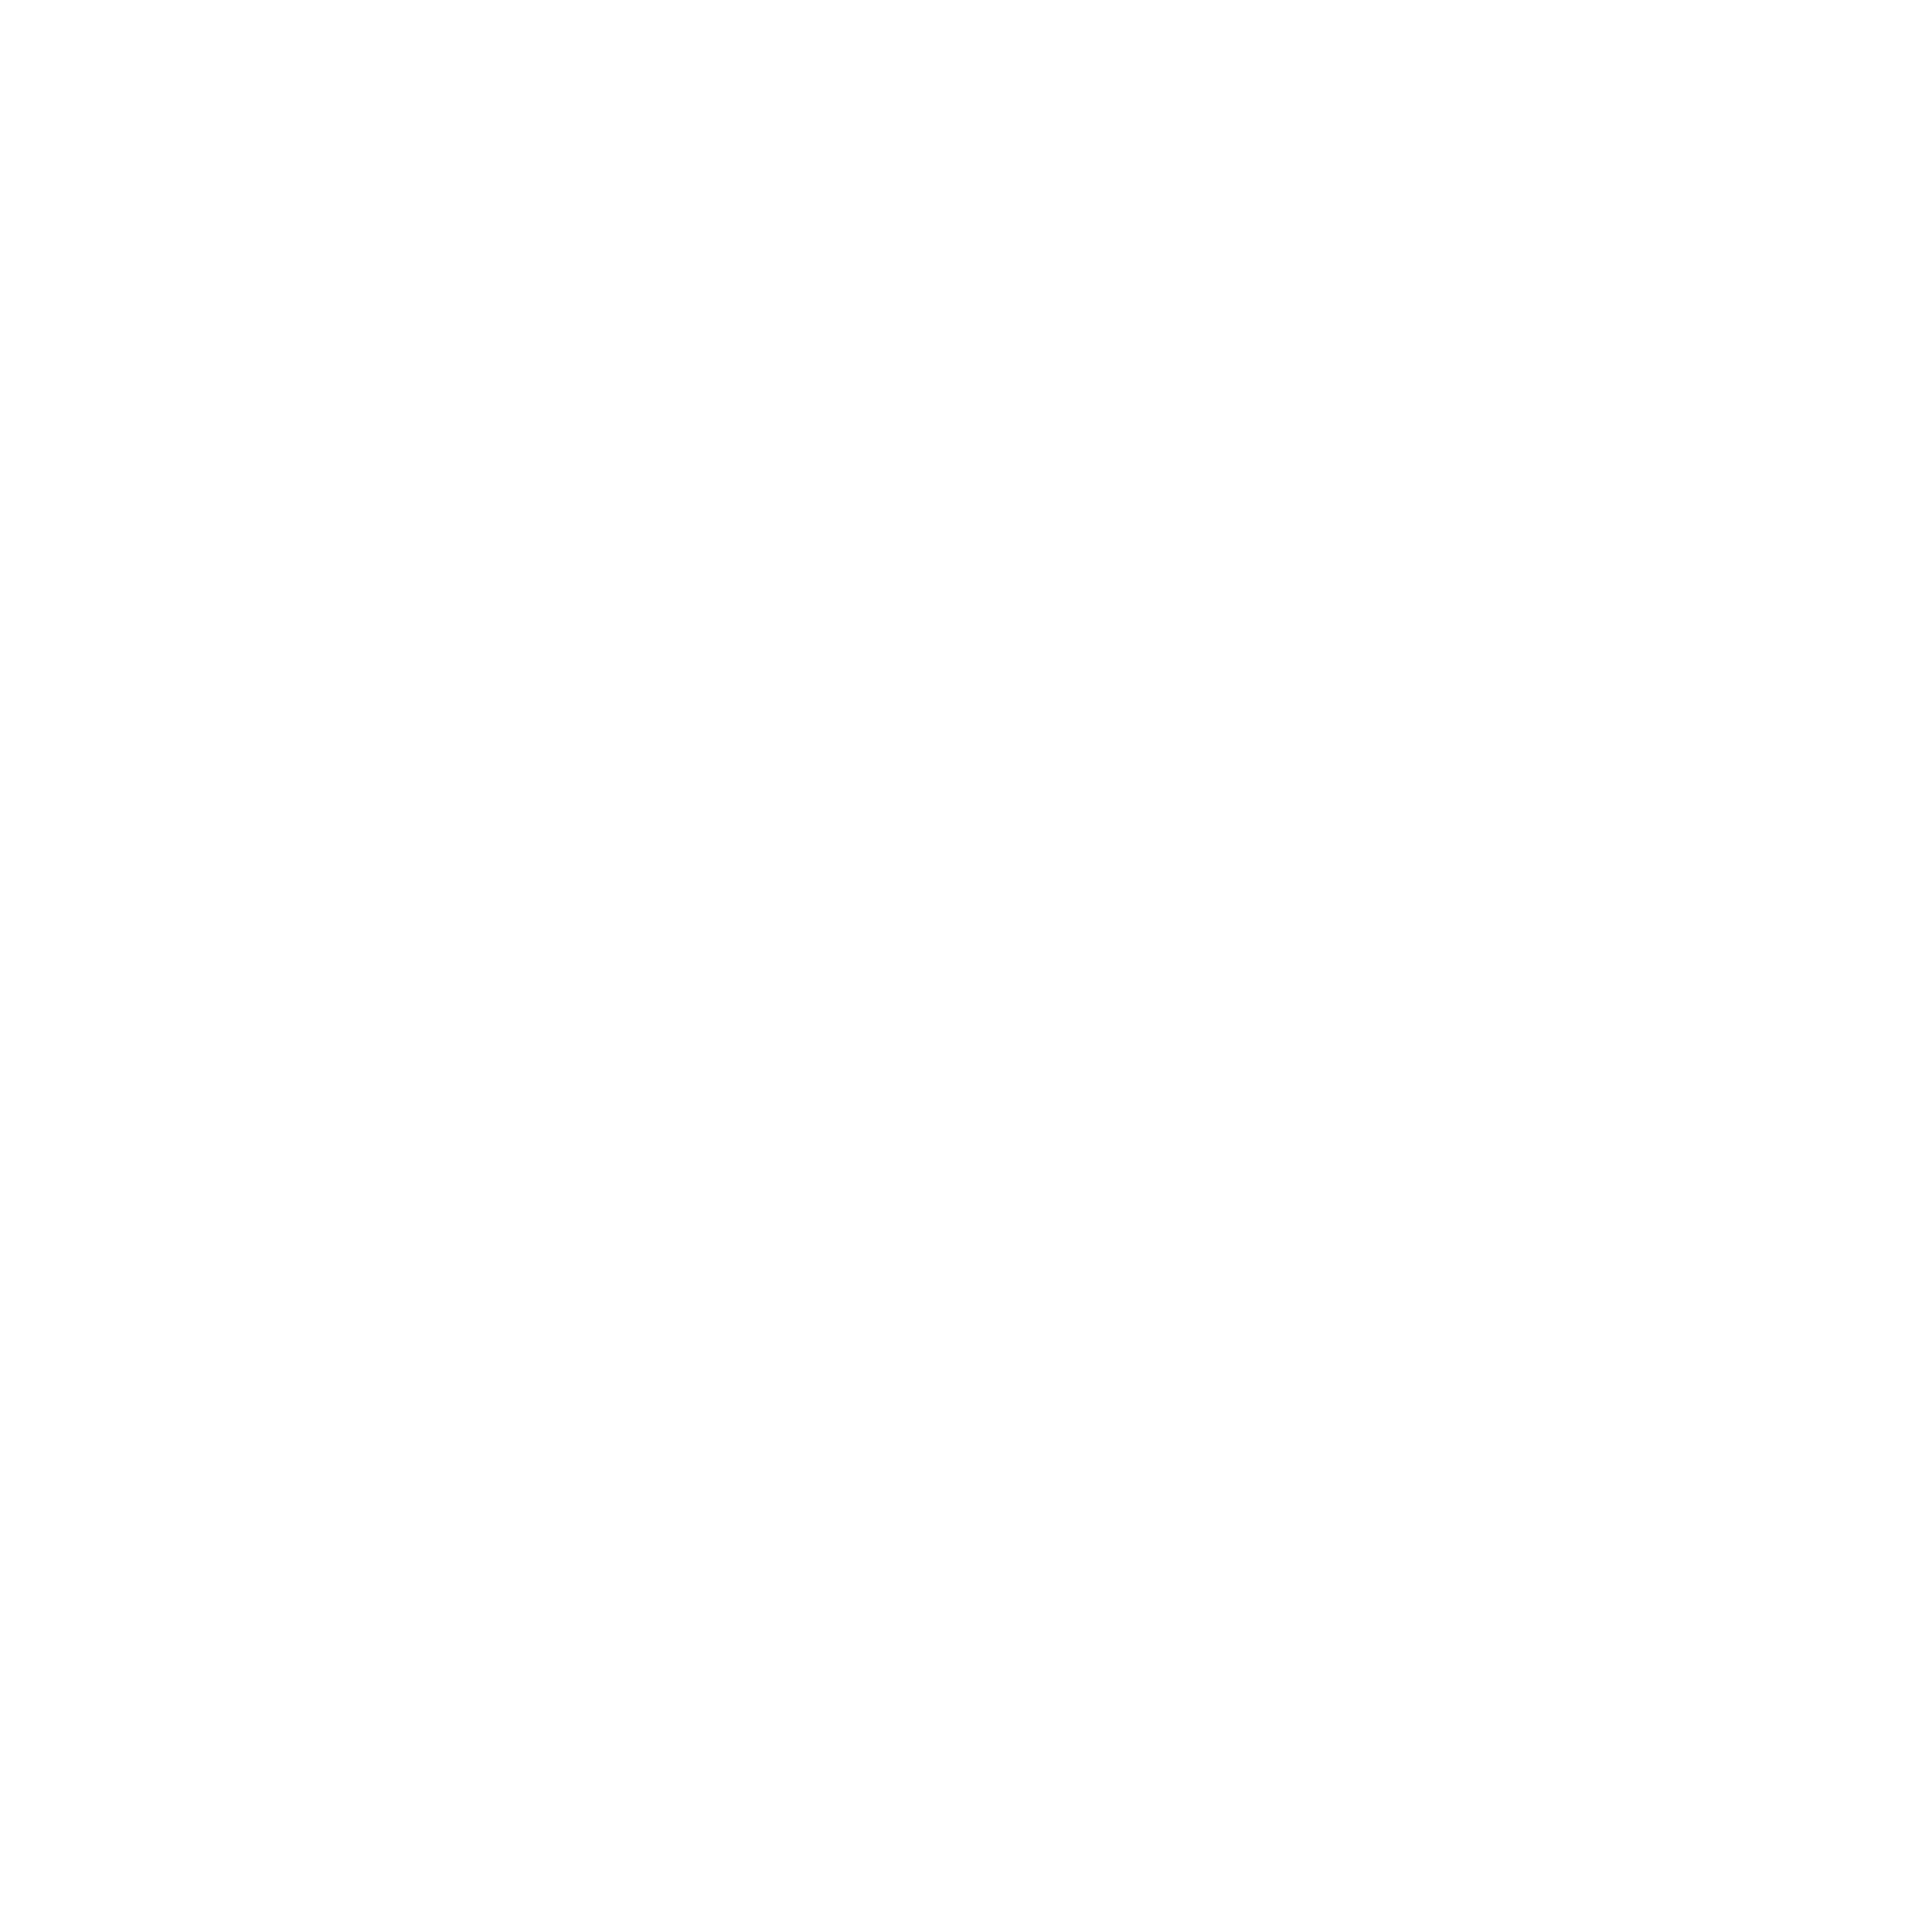 Kenneth Soriyan Research & Ideas